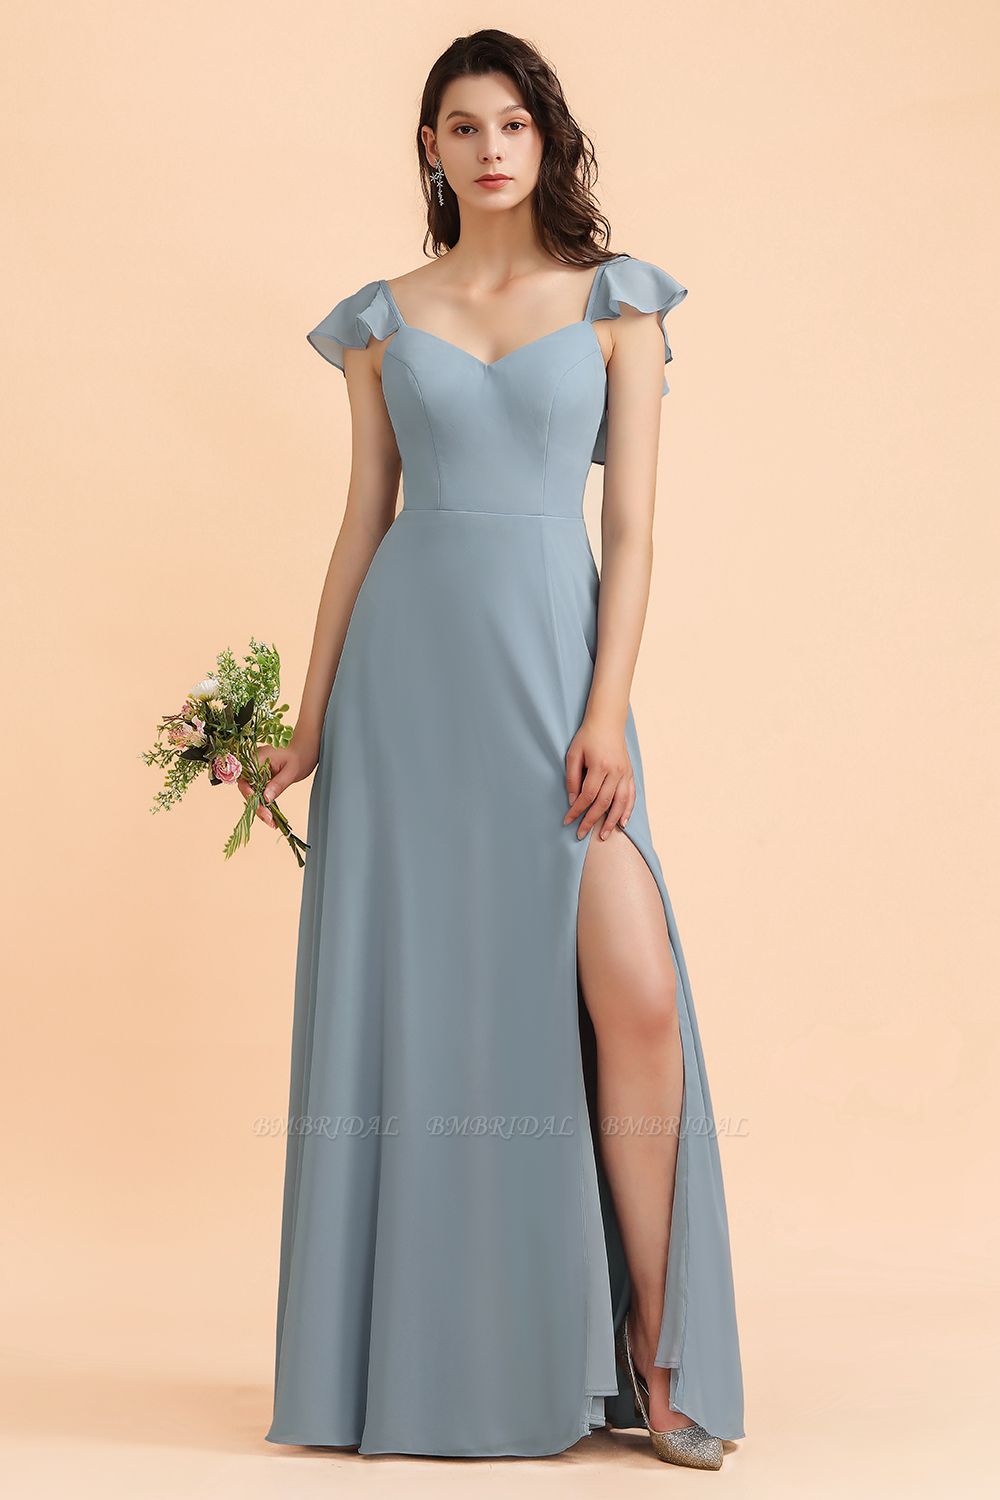 BMbridal Fashion Dusty Blue Chiffon Sweetheart Schlitz Brautjungfernkleid mit Rüschen Online